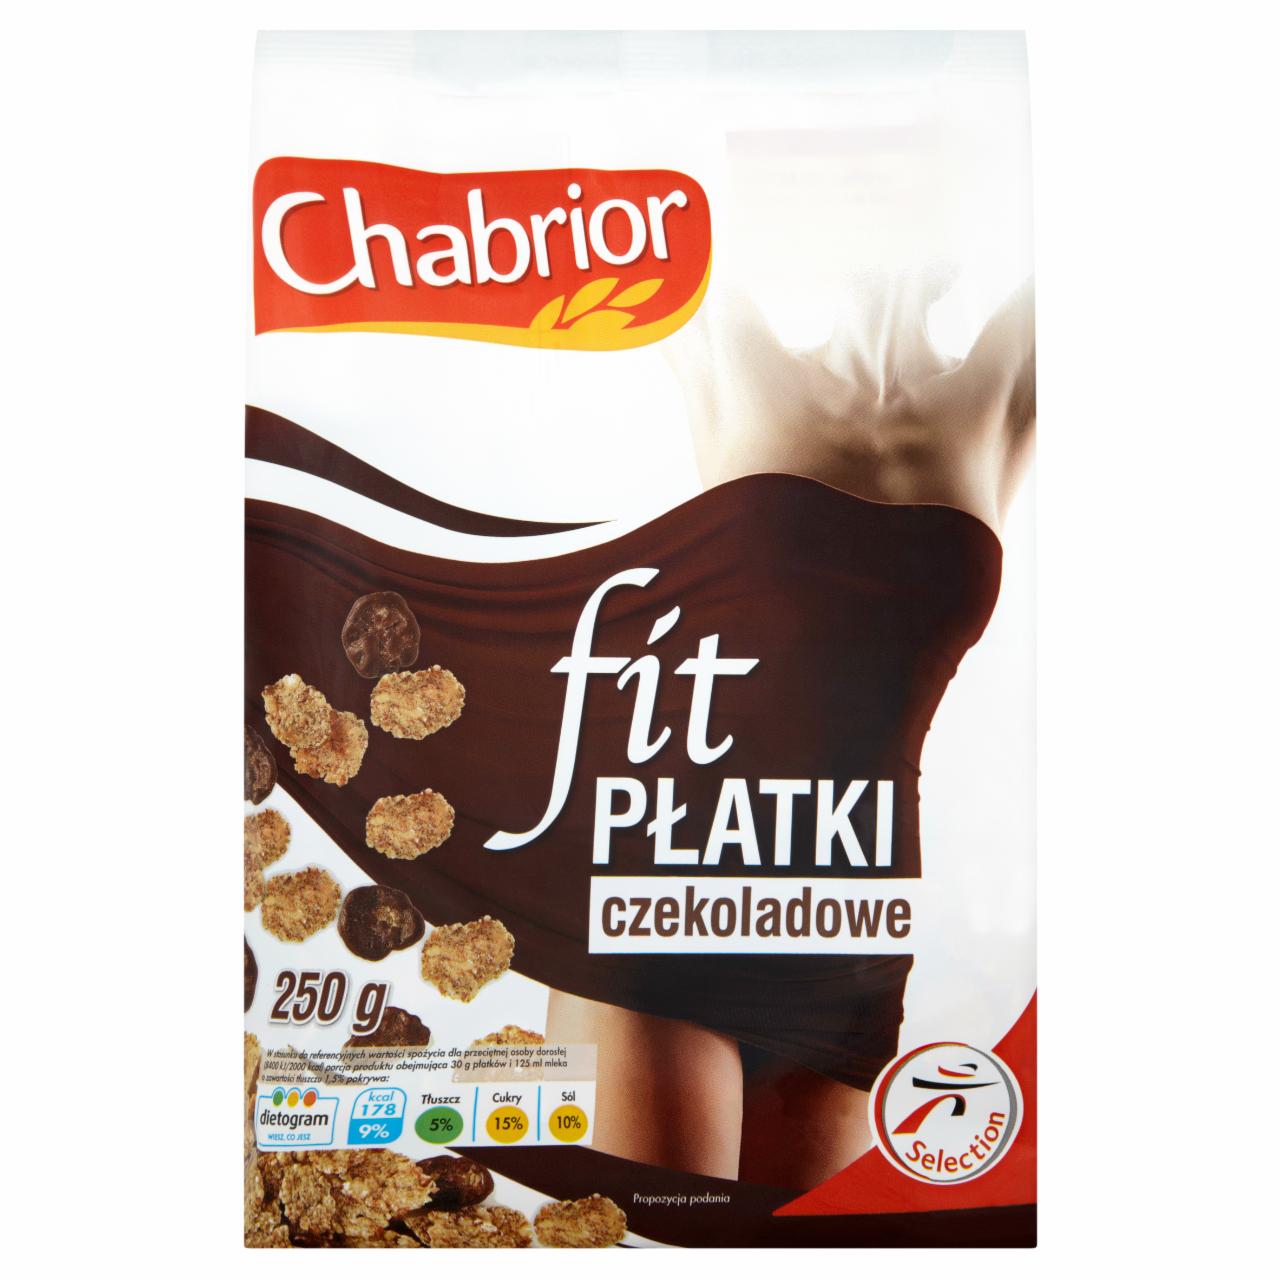 Zdjęcia - Chabrior Fit Mieszanka płatków w polewie cukrowej z płatkami w polewie z mlecznej czekolady 250 g